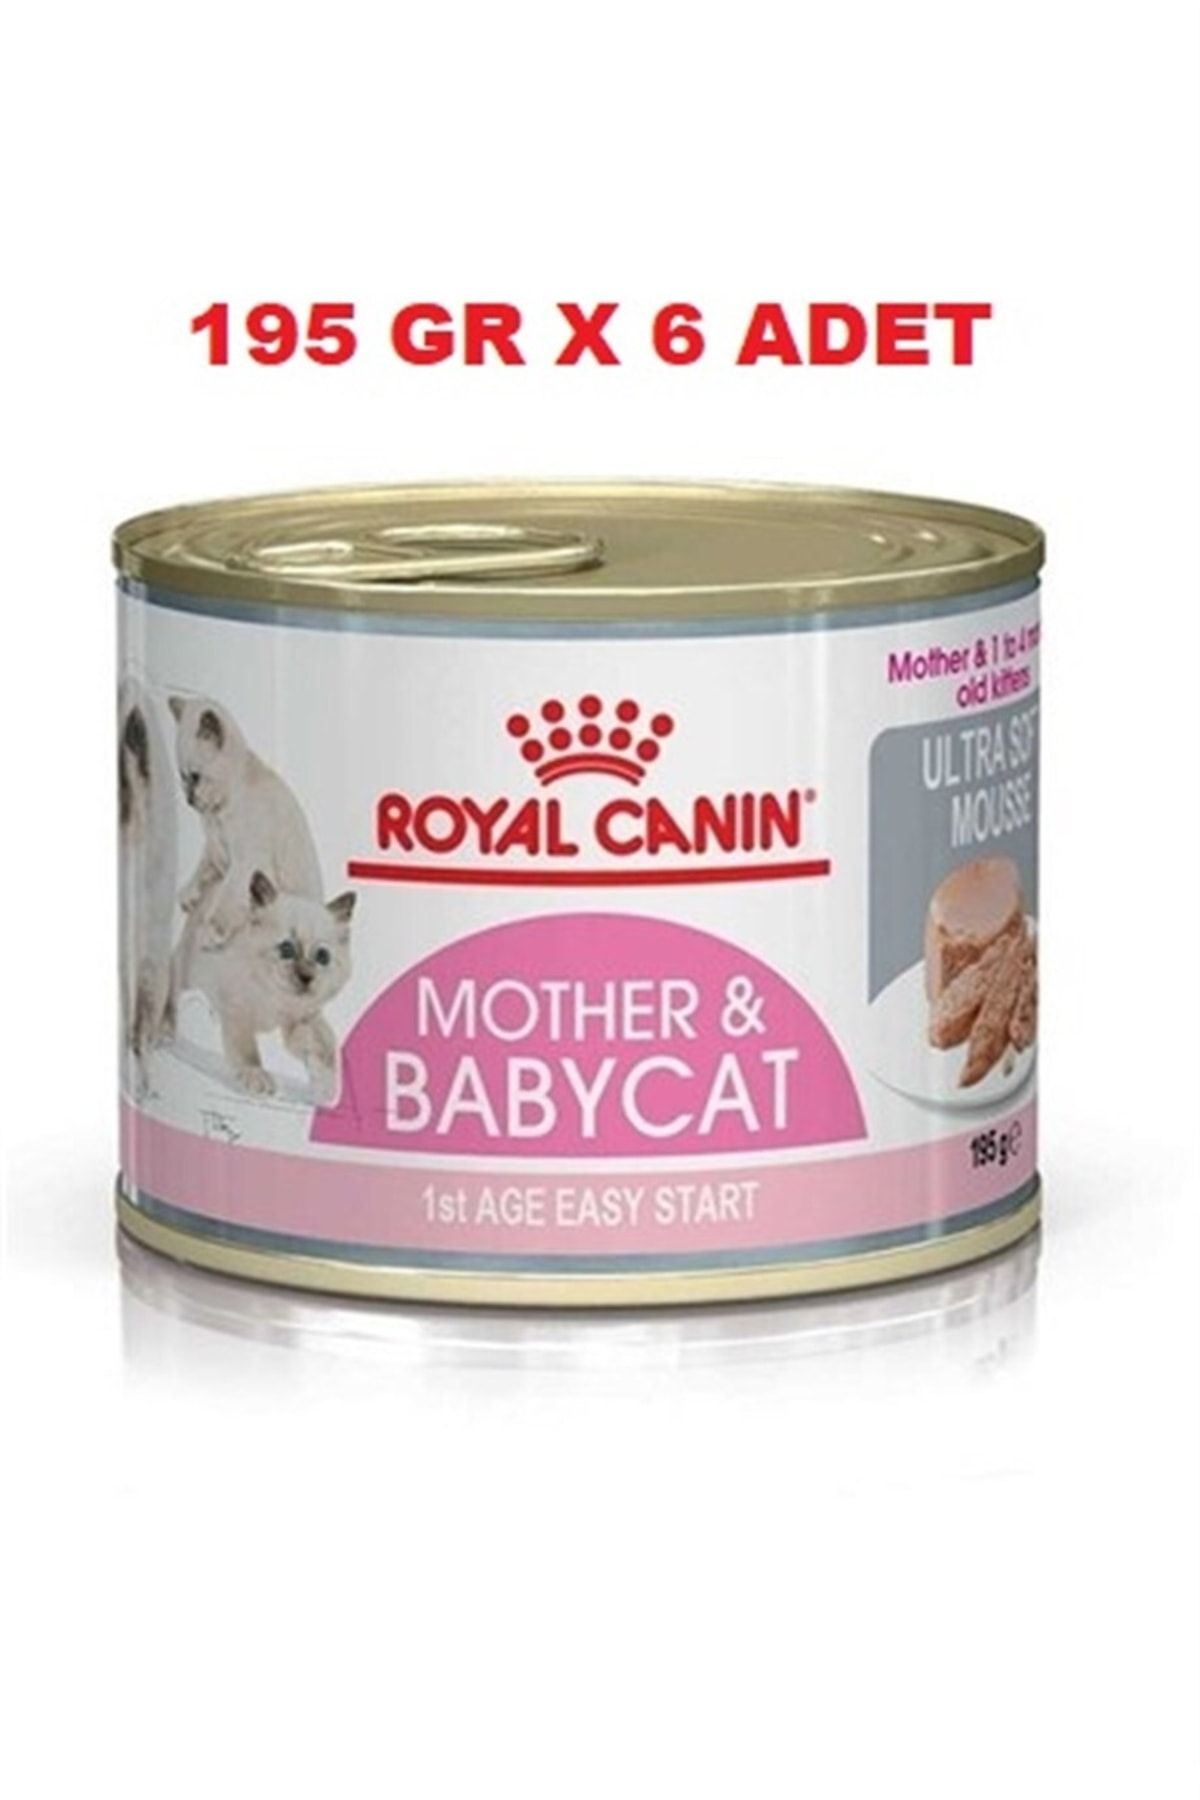 Royal Canin Mother Babycat Konserve 195 Gr X 6